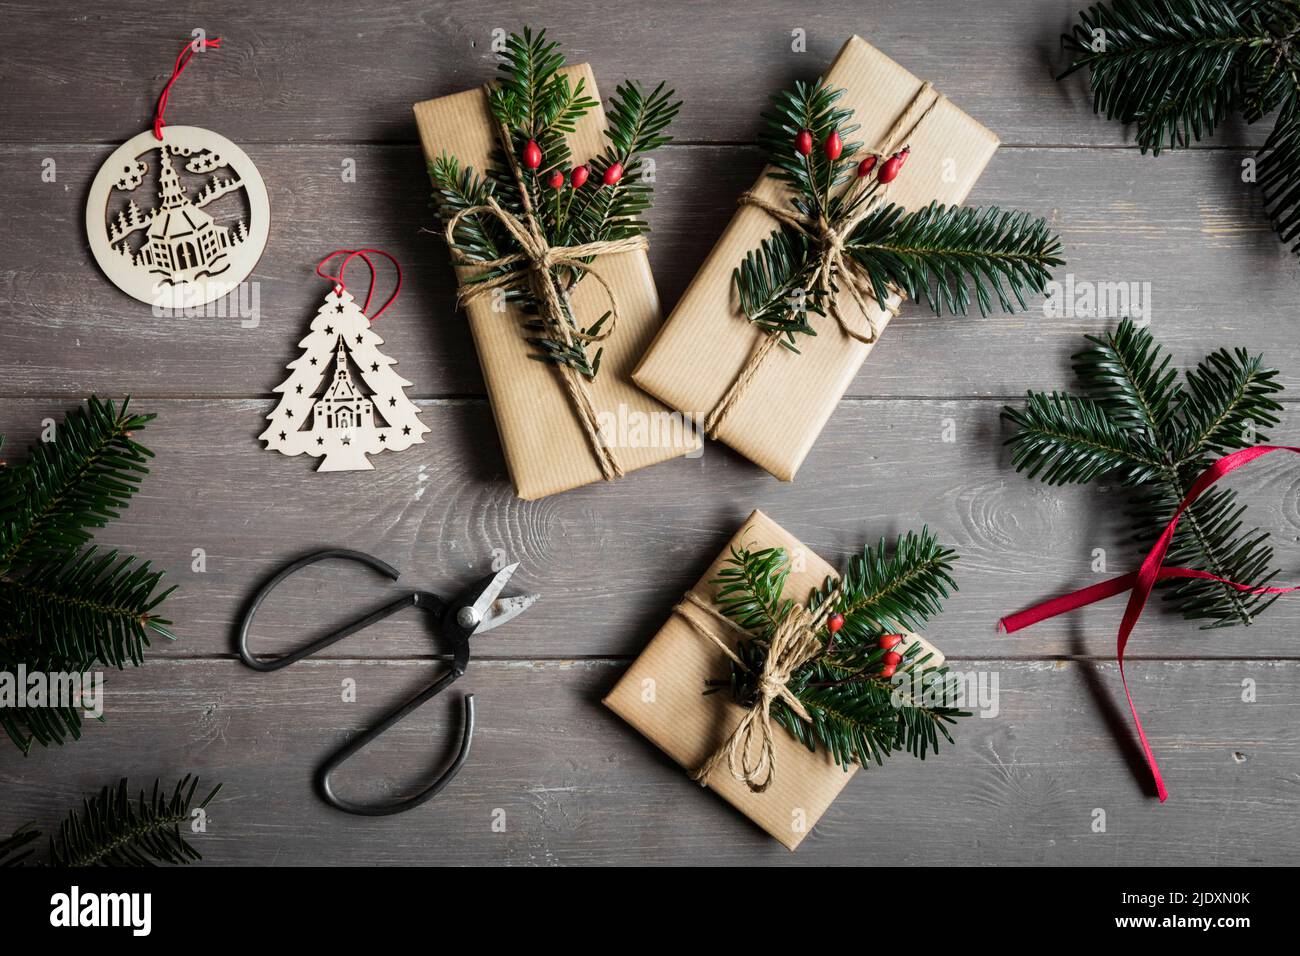 Studioaufnahme von natürlich gewickelten Weihnachtsgeschenken, die mit Fichtenzweigen verziert sind Stockfoto